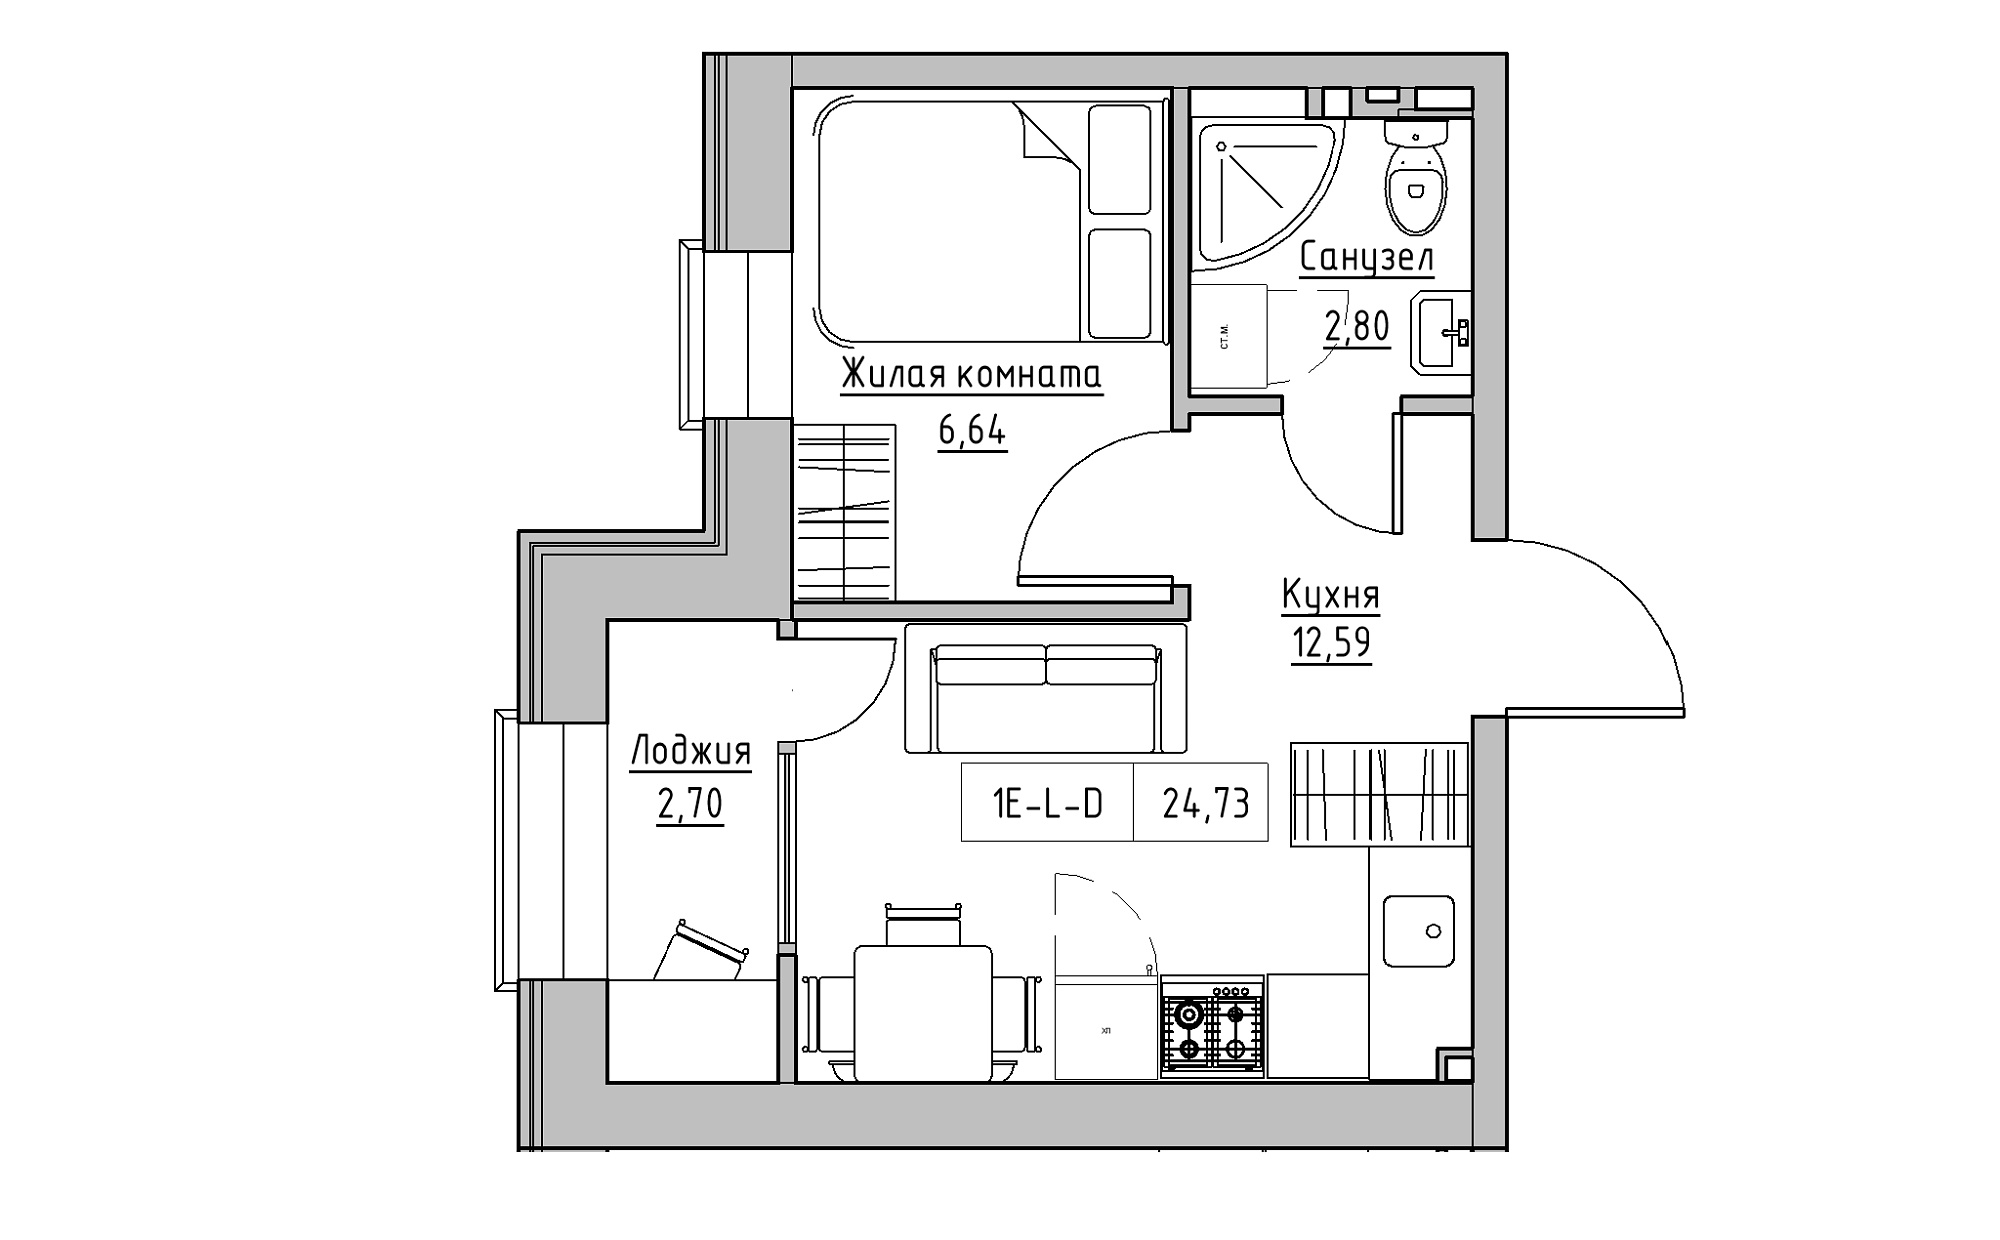 Планировка 1-к квартира площей 24.73м2, KS-022-05/0016.